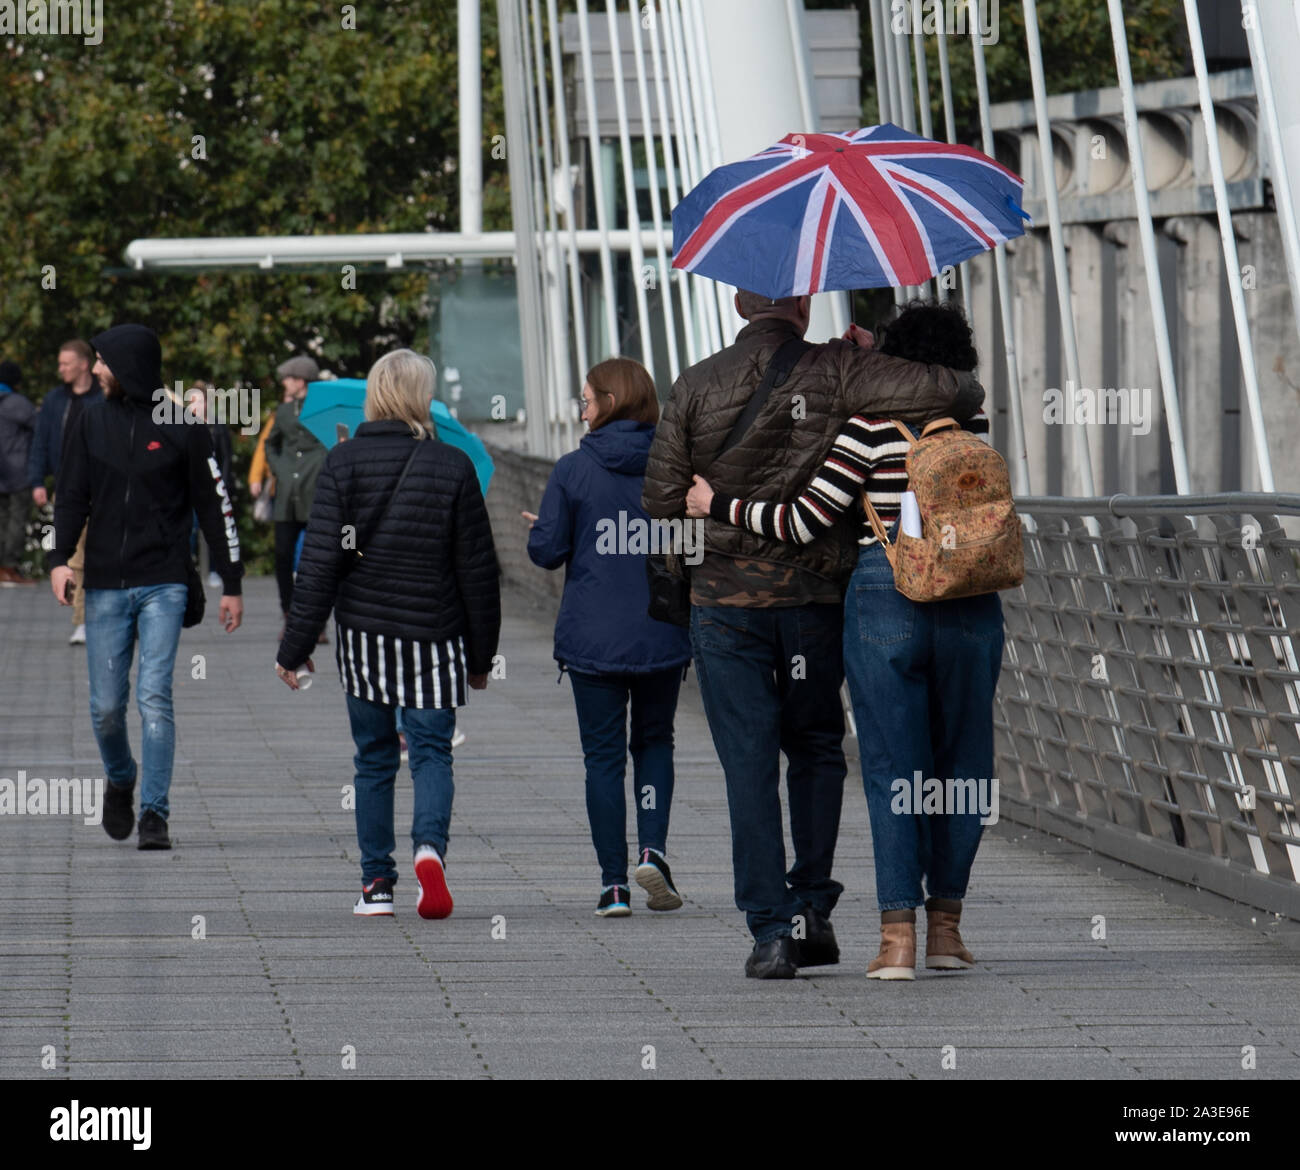 Londres, Royaume-Uni. 7Th Oct 2019. Météo France : un couple avec un parapluie de l'Union, se promener le long du pont du jubilé d'un jour humide et terne. Celia McMahon/Alamy Live News. Credit : Celia McMahon/Alamy Live News Banque D'Images